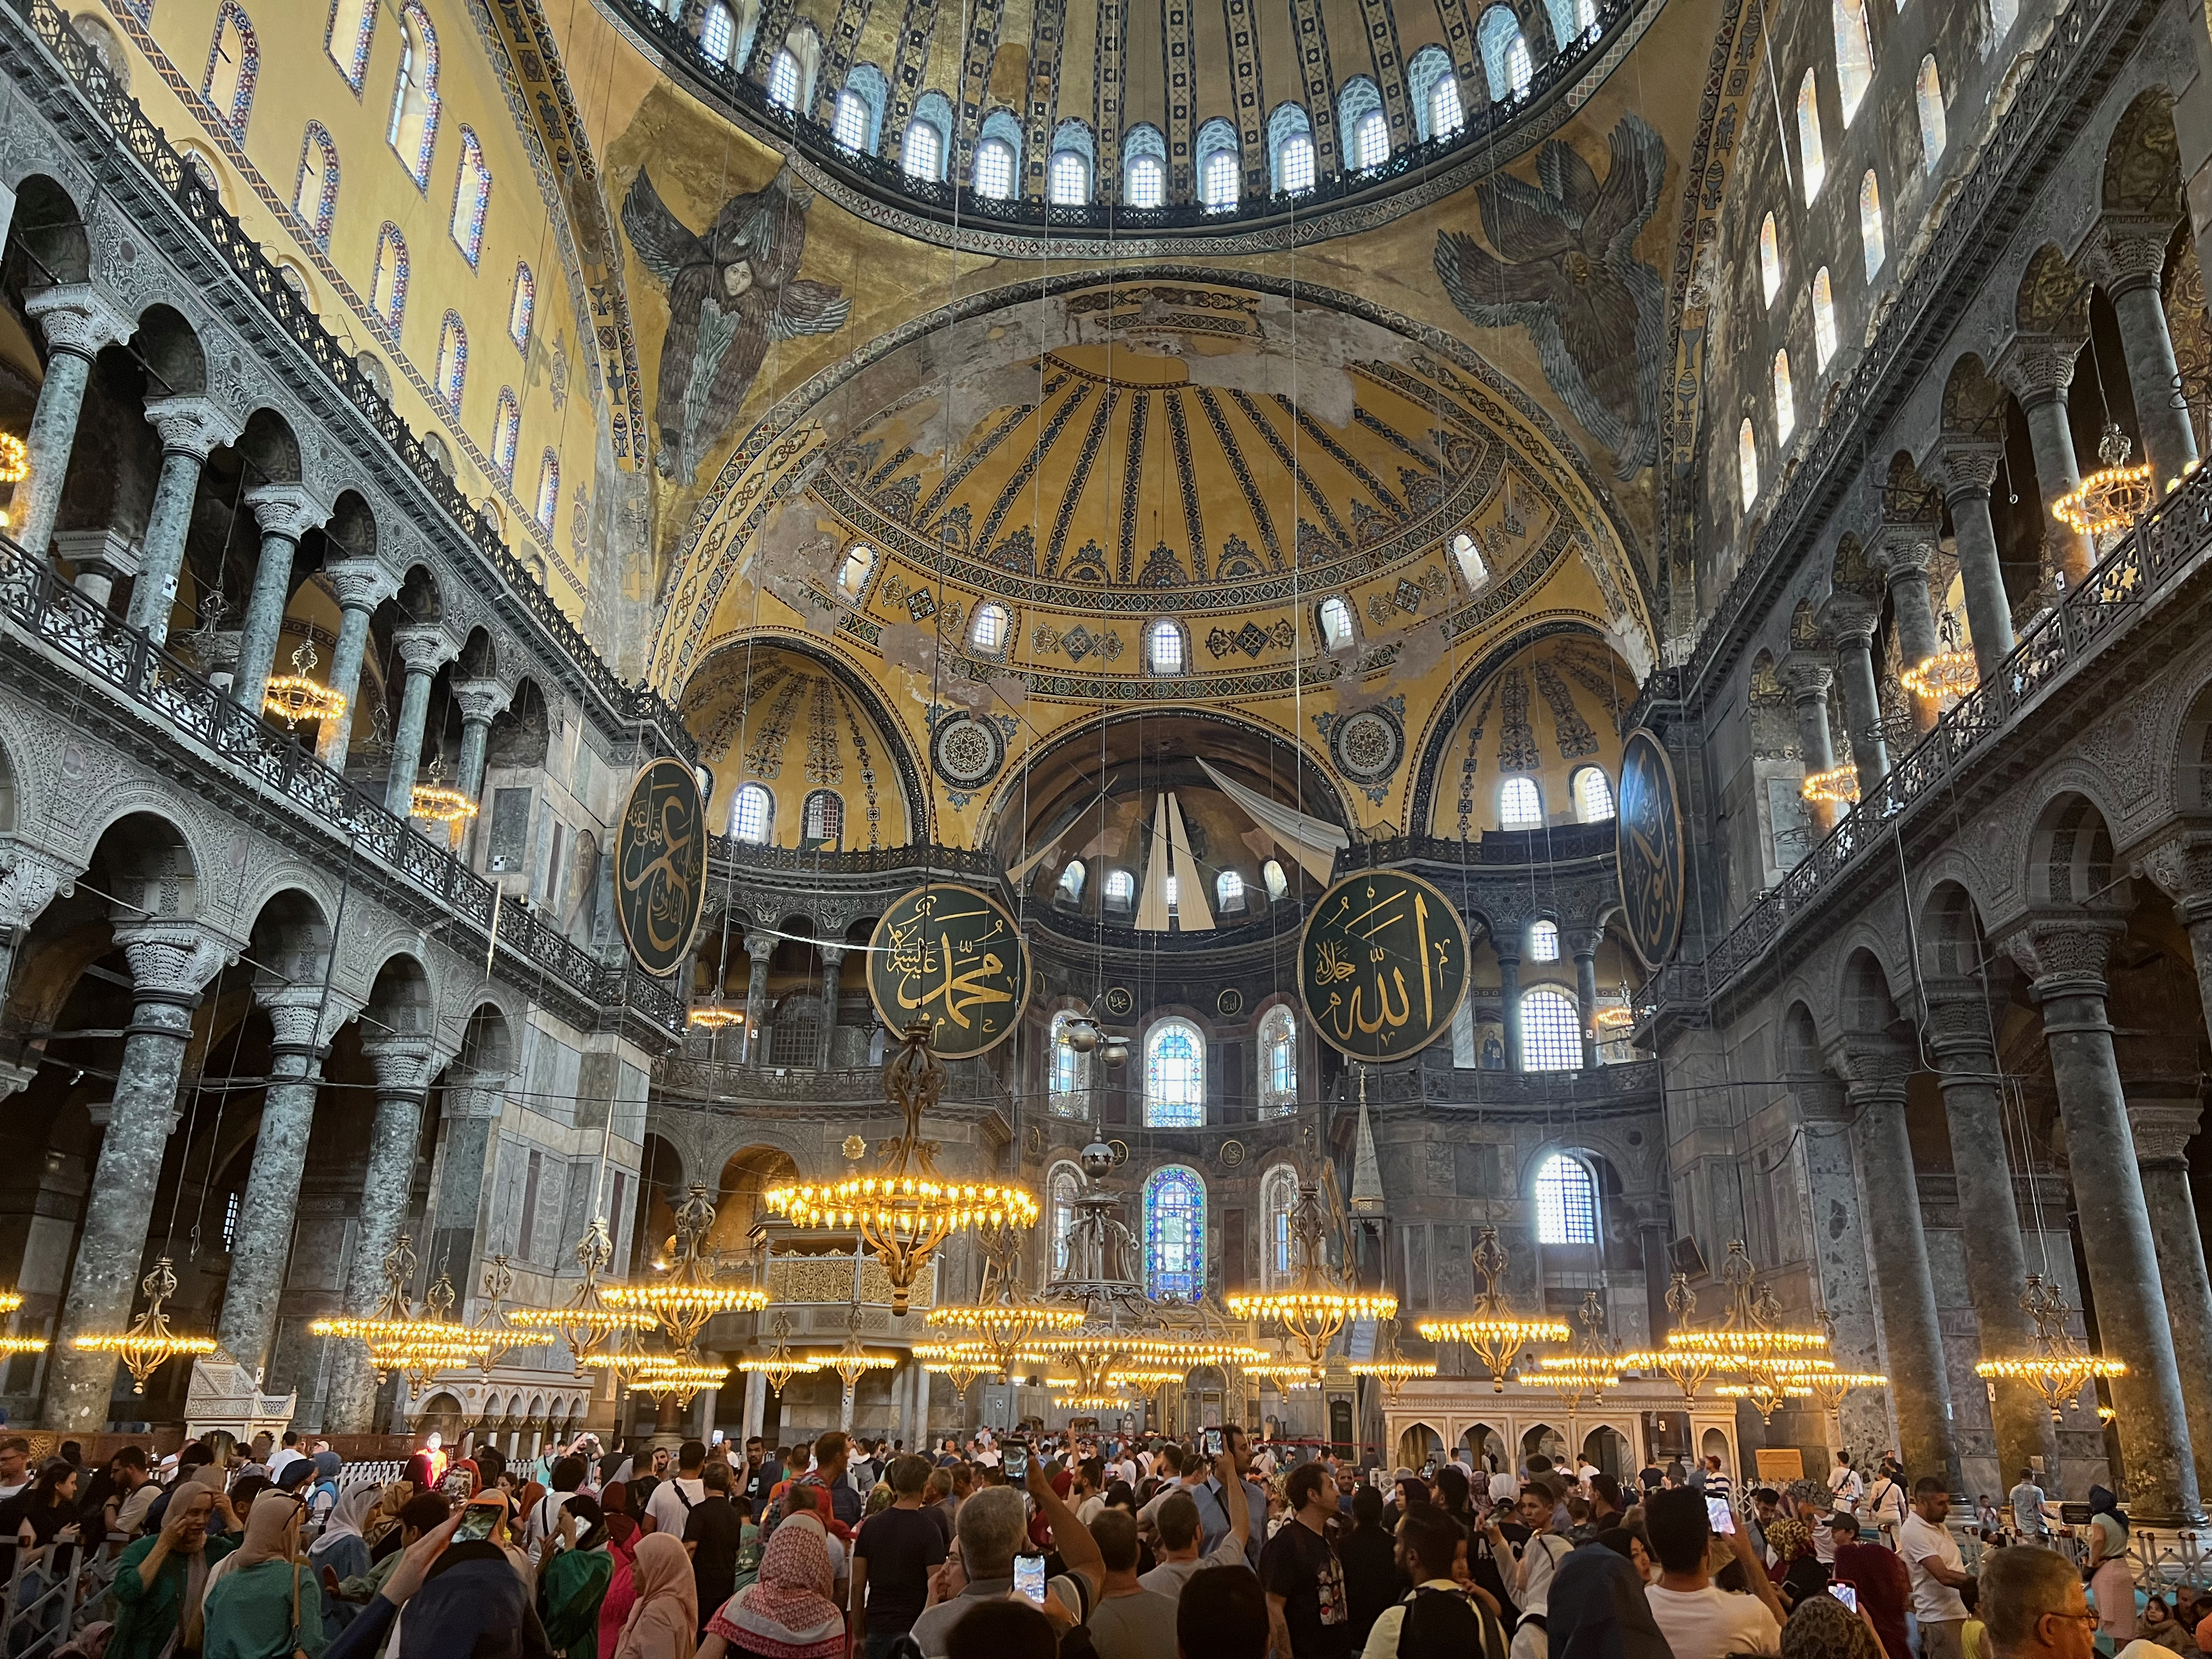 In the Hagia Sophia